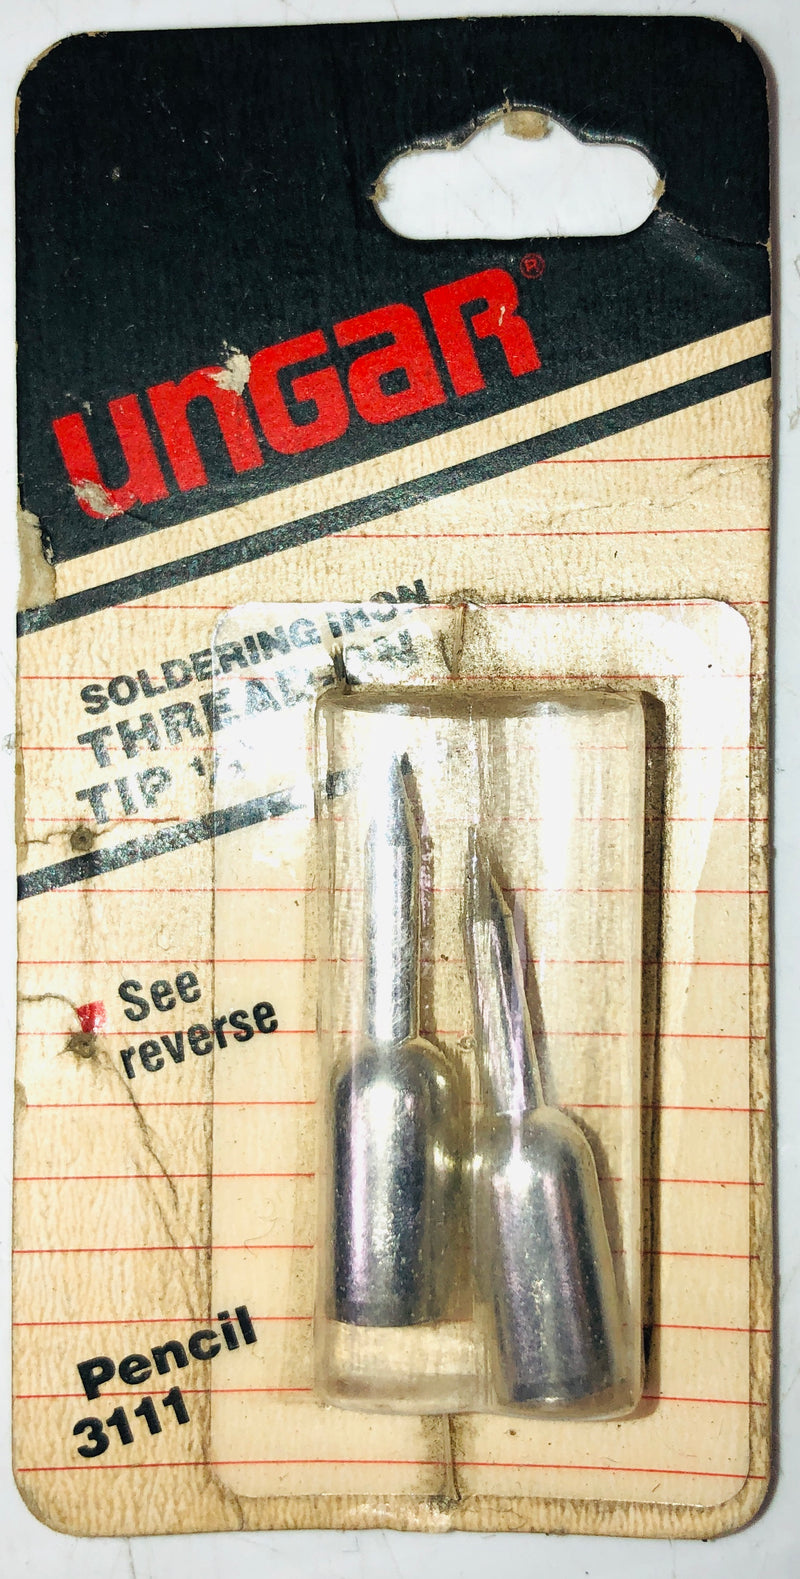 Ungar Soldering Iron Thread On Tip 1/4" Pencil 3111